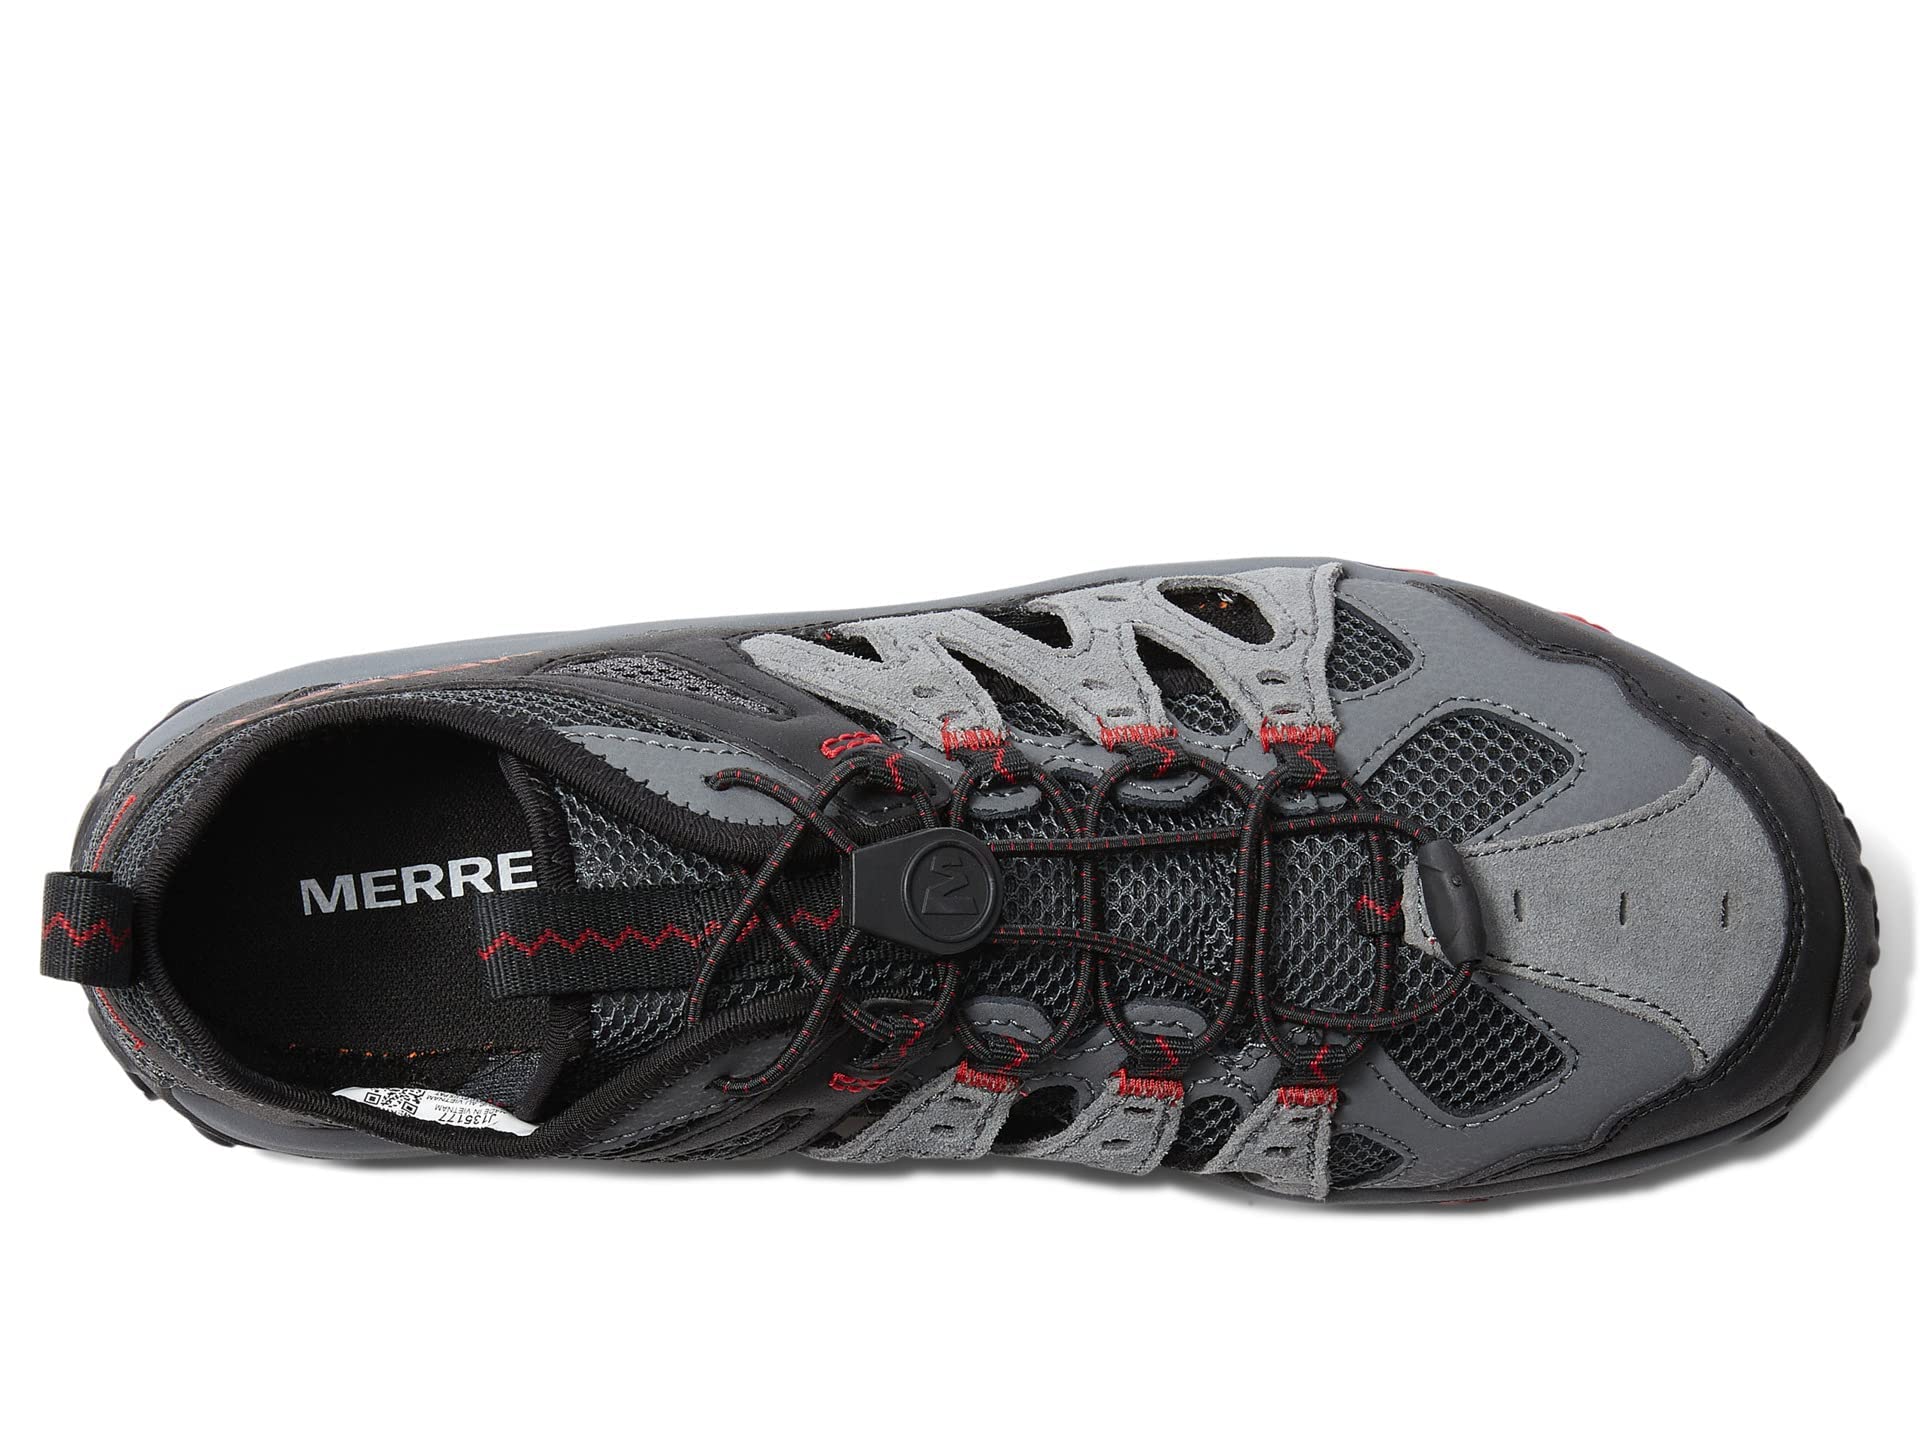 Merrell Men's, Accentor 3 Sieve Hiking Sandal